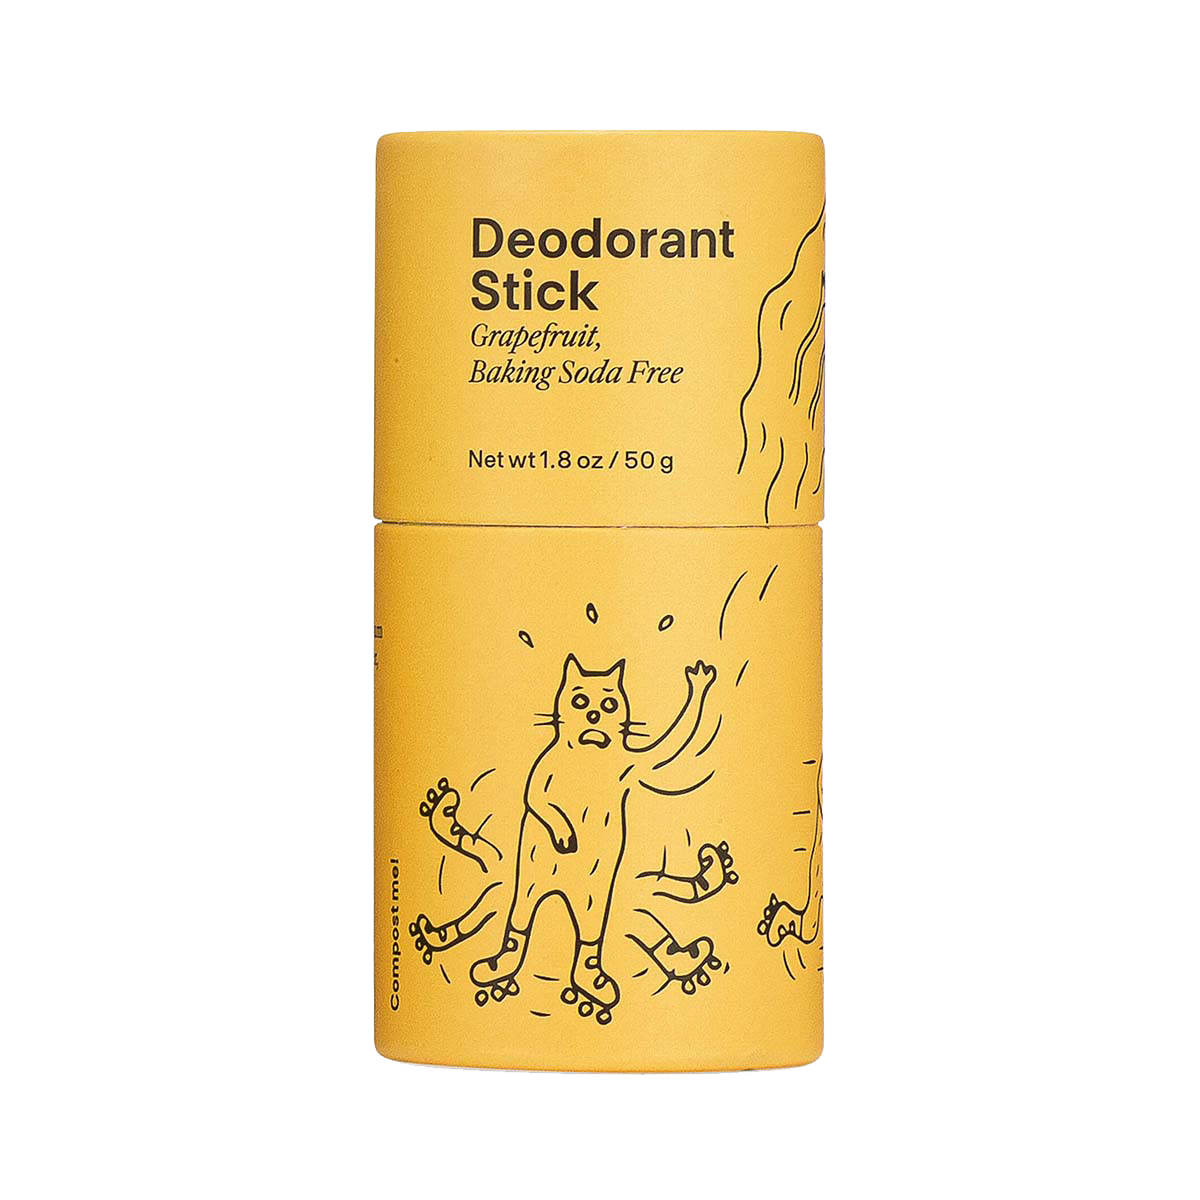 Deodorant Stick - Grapefruit (Baking Soda Free)